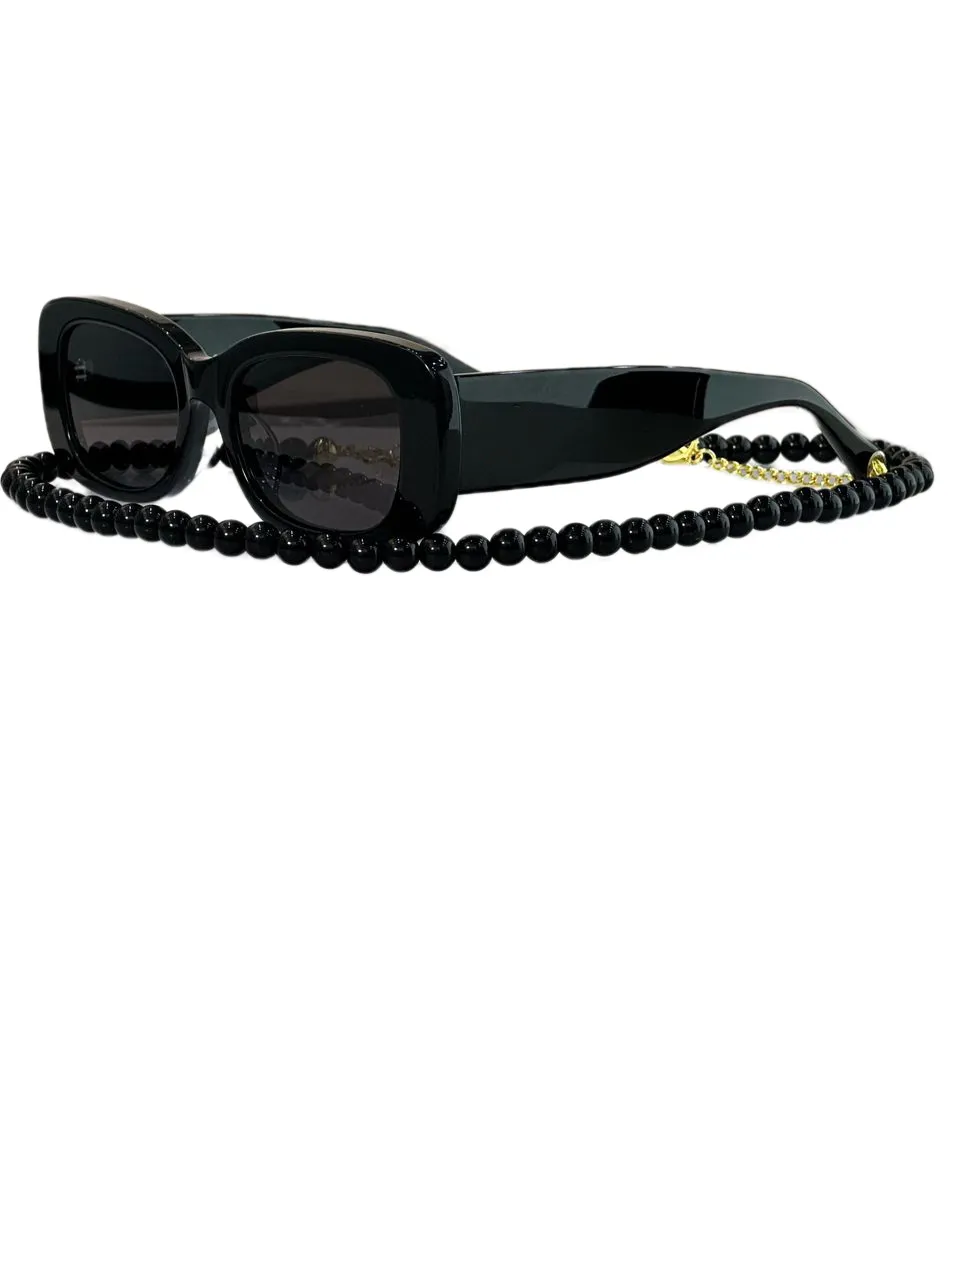 Damen-Sonnenbrille für Damen und Herren, Sonnenbrille für Herren, modischer Stil, schützt die Augen, UV400-Linse, mit zufälliger Box und Etui 5488